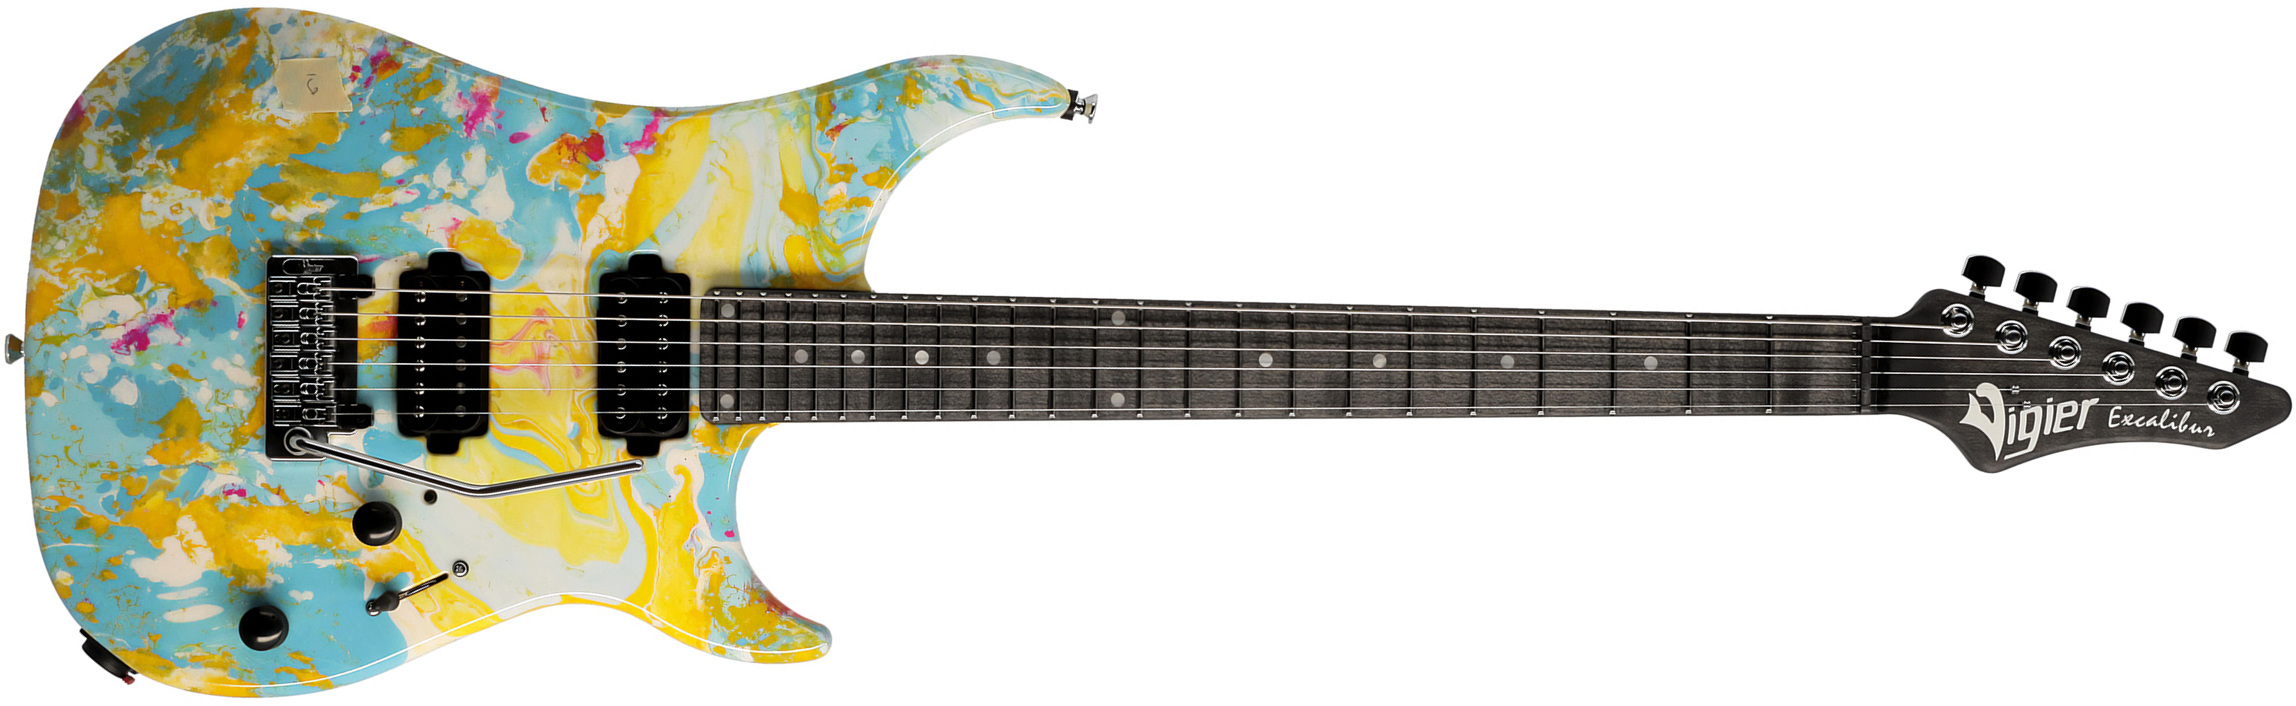 Vigier Excalibur Thirteen 2h Trem Mn - Rock Art Yellow Blue White - Elektrische gitaar in Str-vorm - Main picture